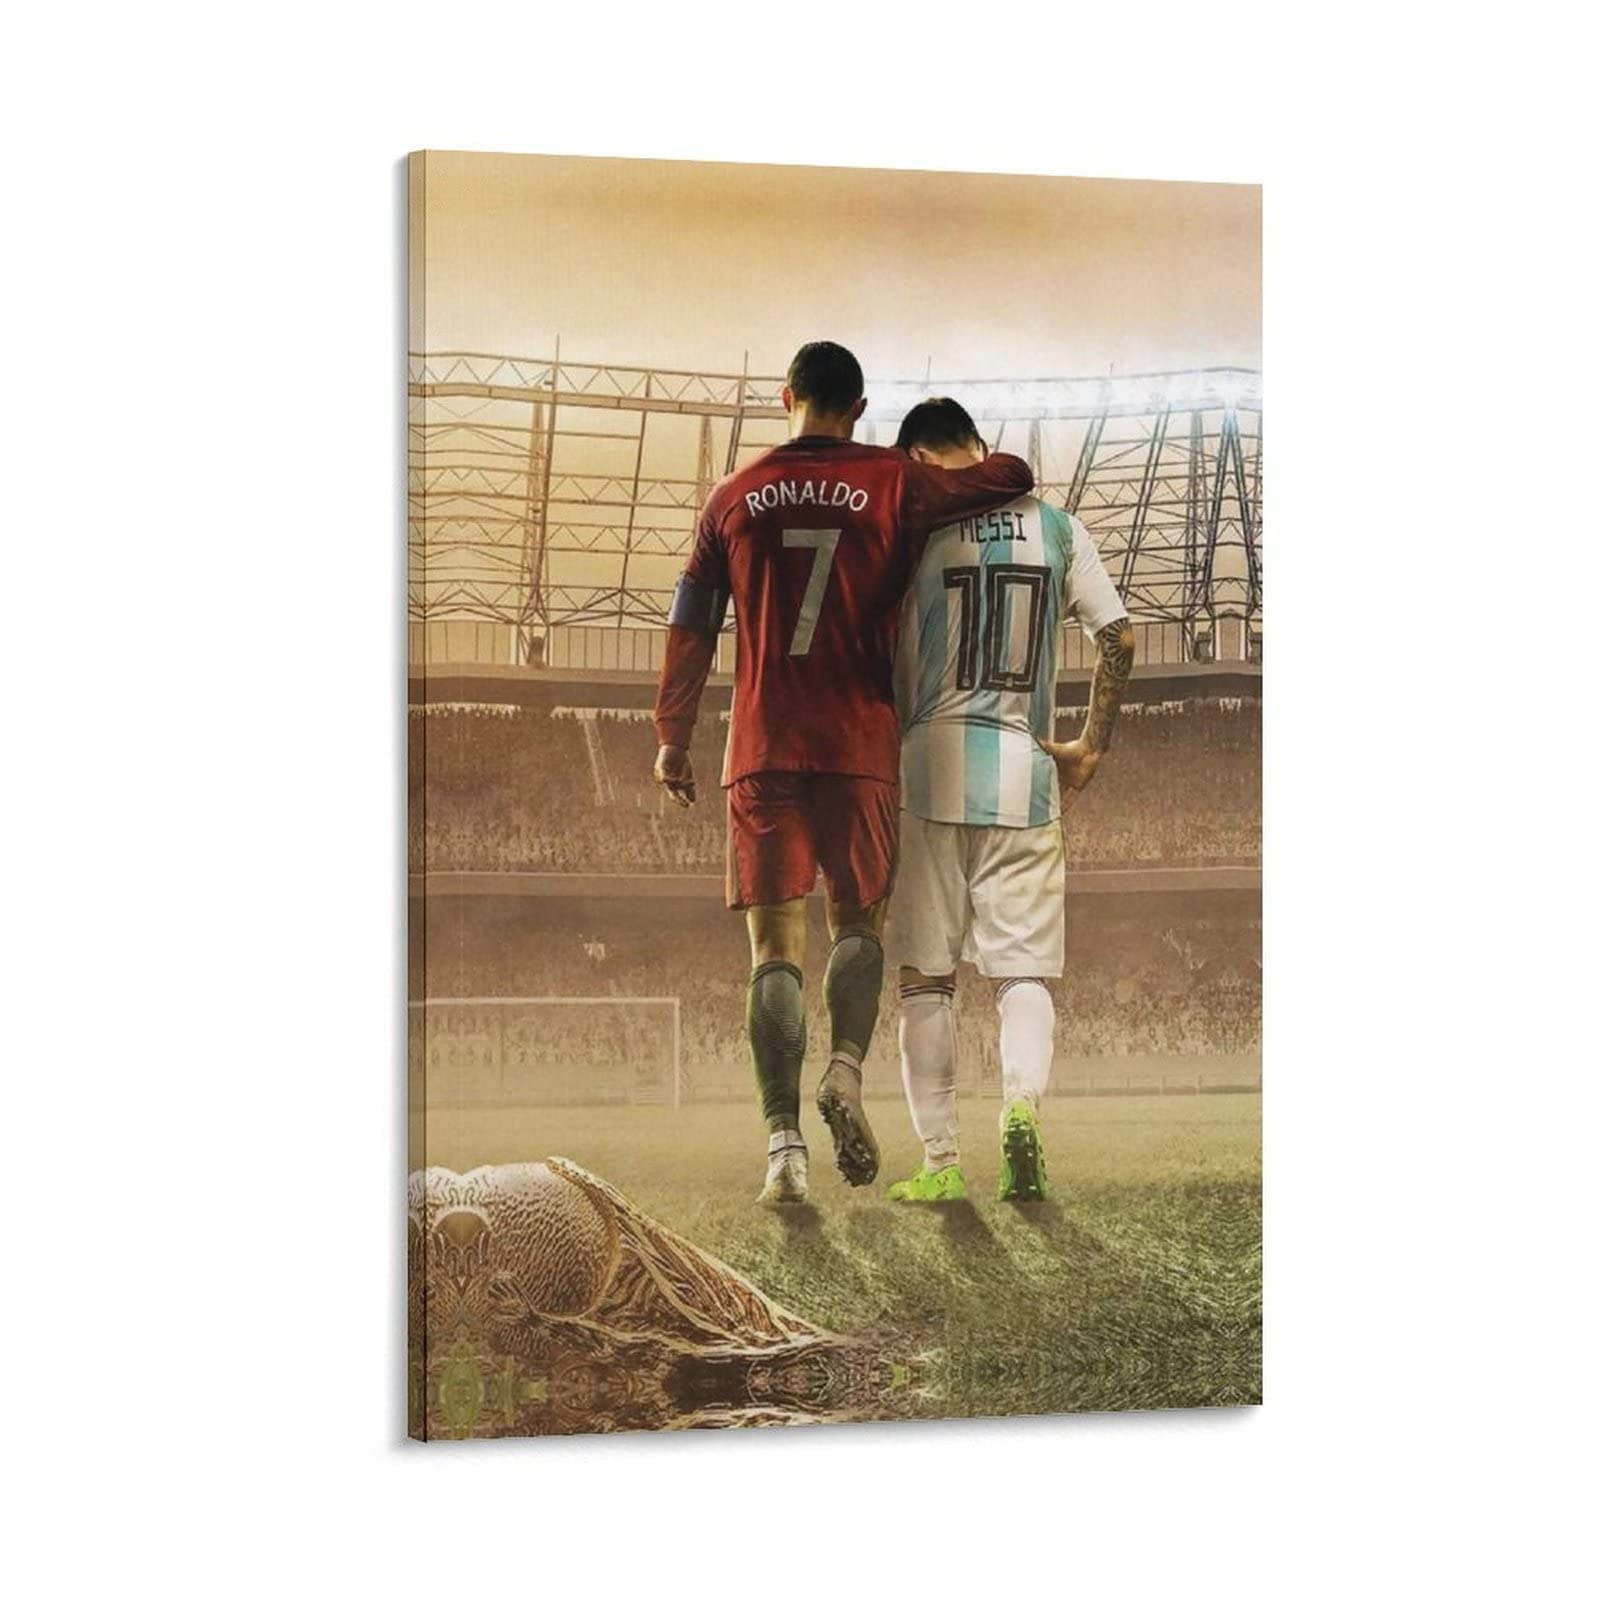 XXJDSK Poster Kunstdrucke Freundschaft Ronaldo und Messi Modern Family Schlafzimmer Dekor Poster 60X90cm Kein Rahmen